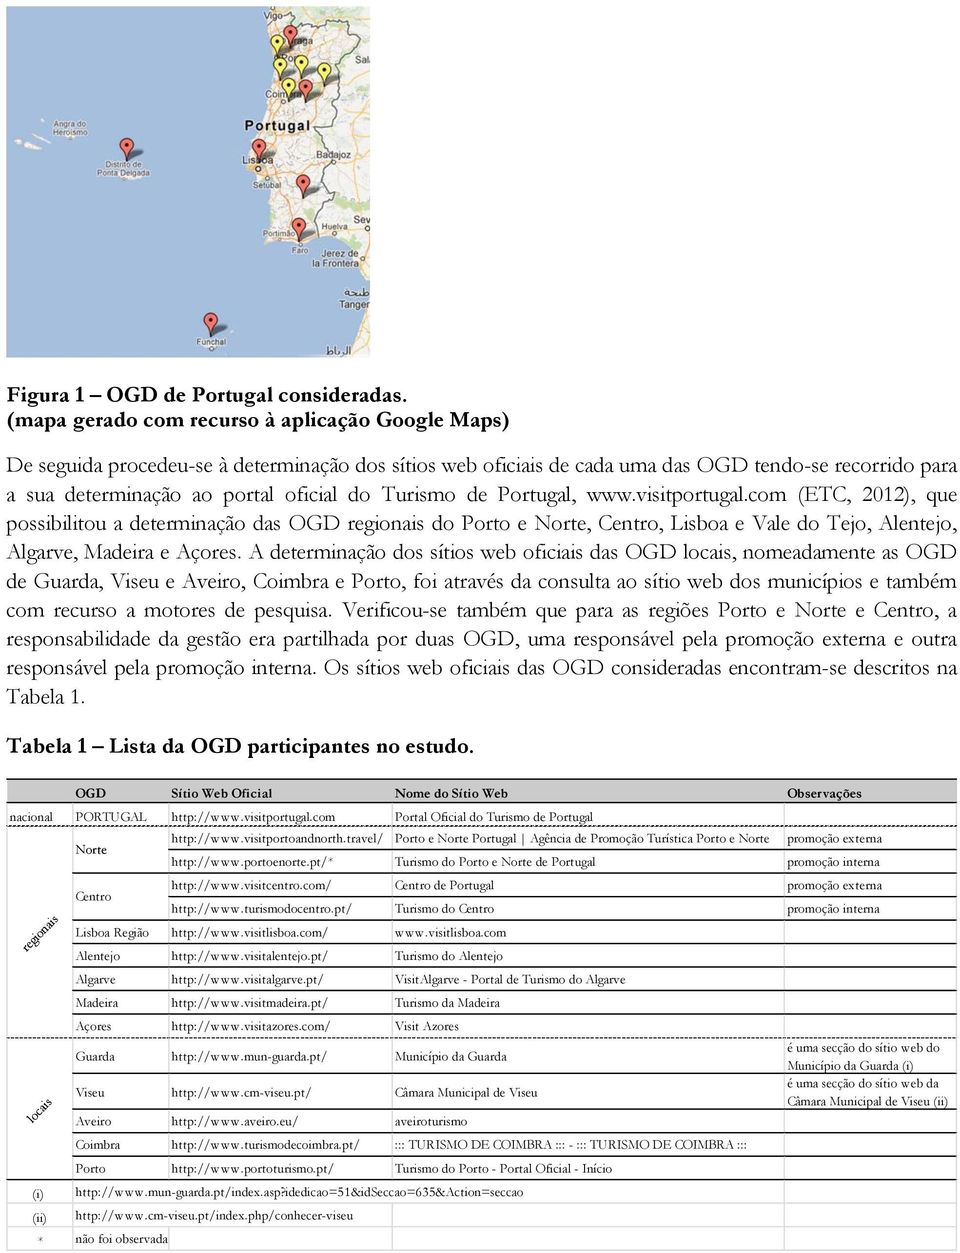 Turismo de Portugal, www.visitportugal.com (ETC, 2012), que possibilitou a determinação das OGD regionais do Porto e Norte, Centro, Lisboa e Vale do Tejo, Alentejo, Algarve, Madeira e Açores.